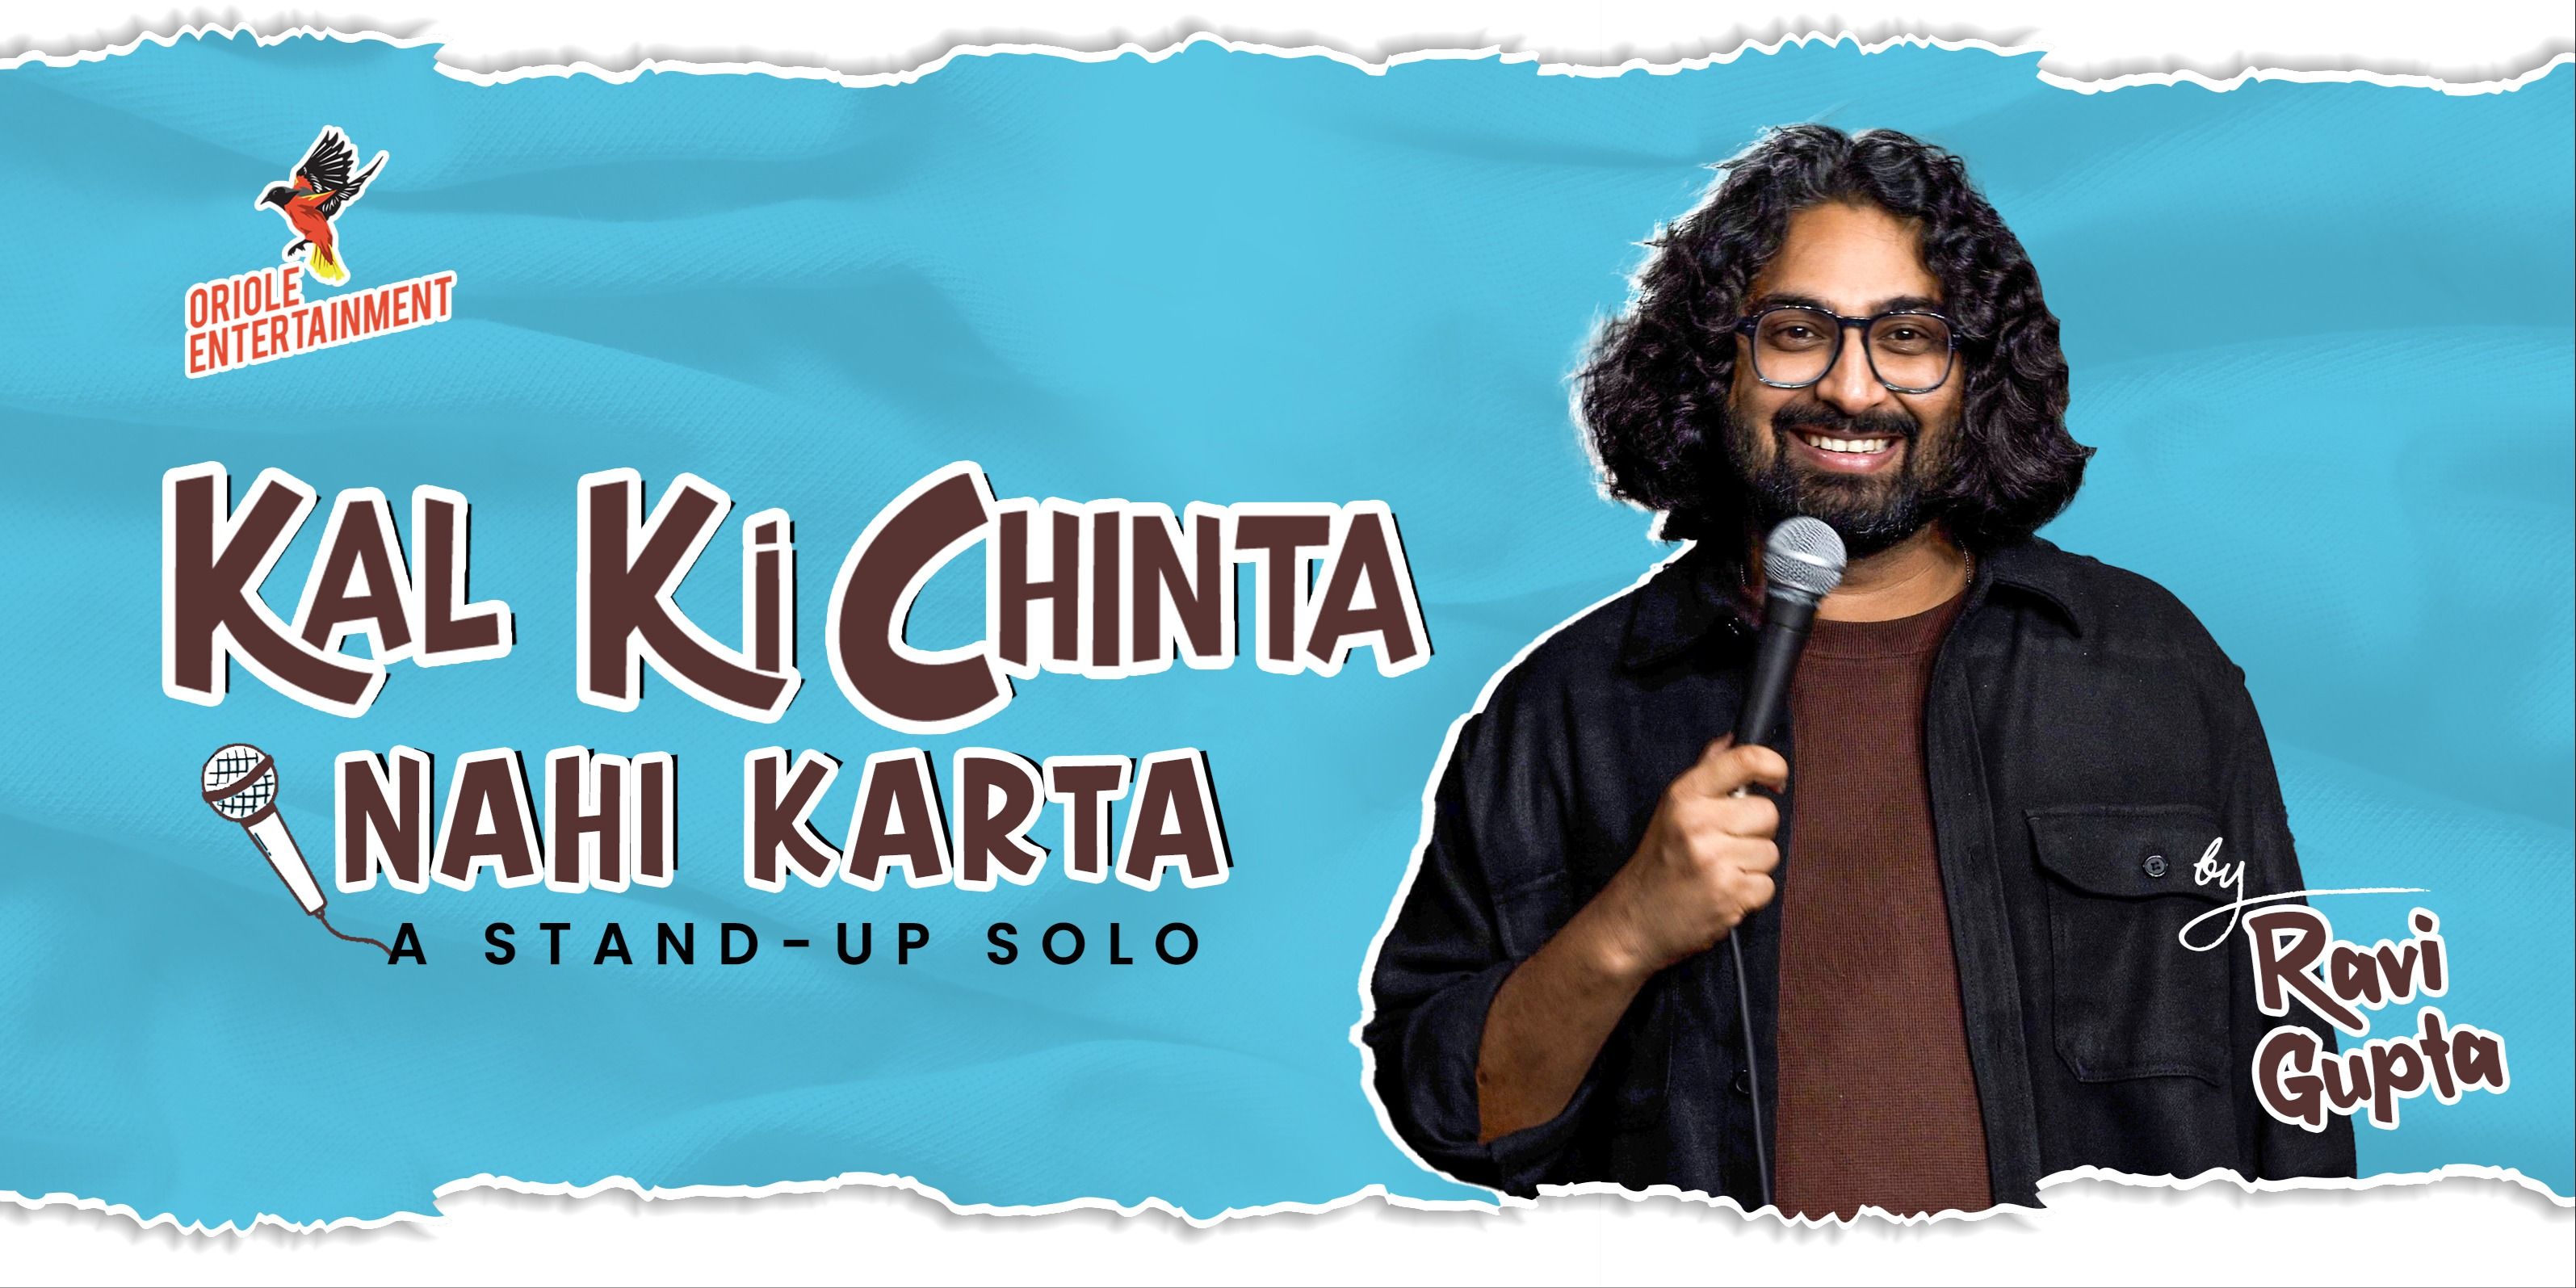 Kal Ki Chinta Nahi Karta ft. Ravi Gupta in Hyderabad